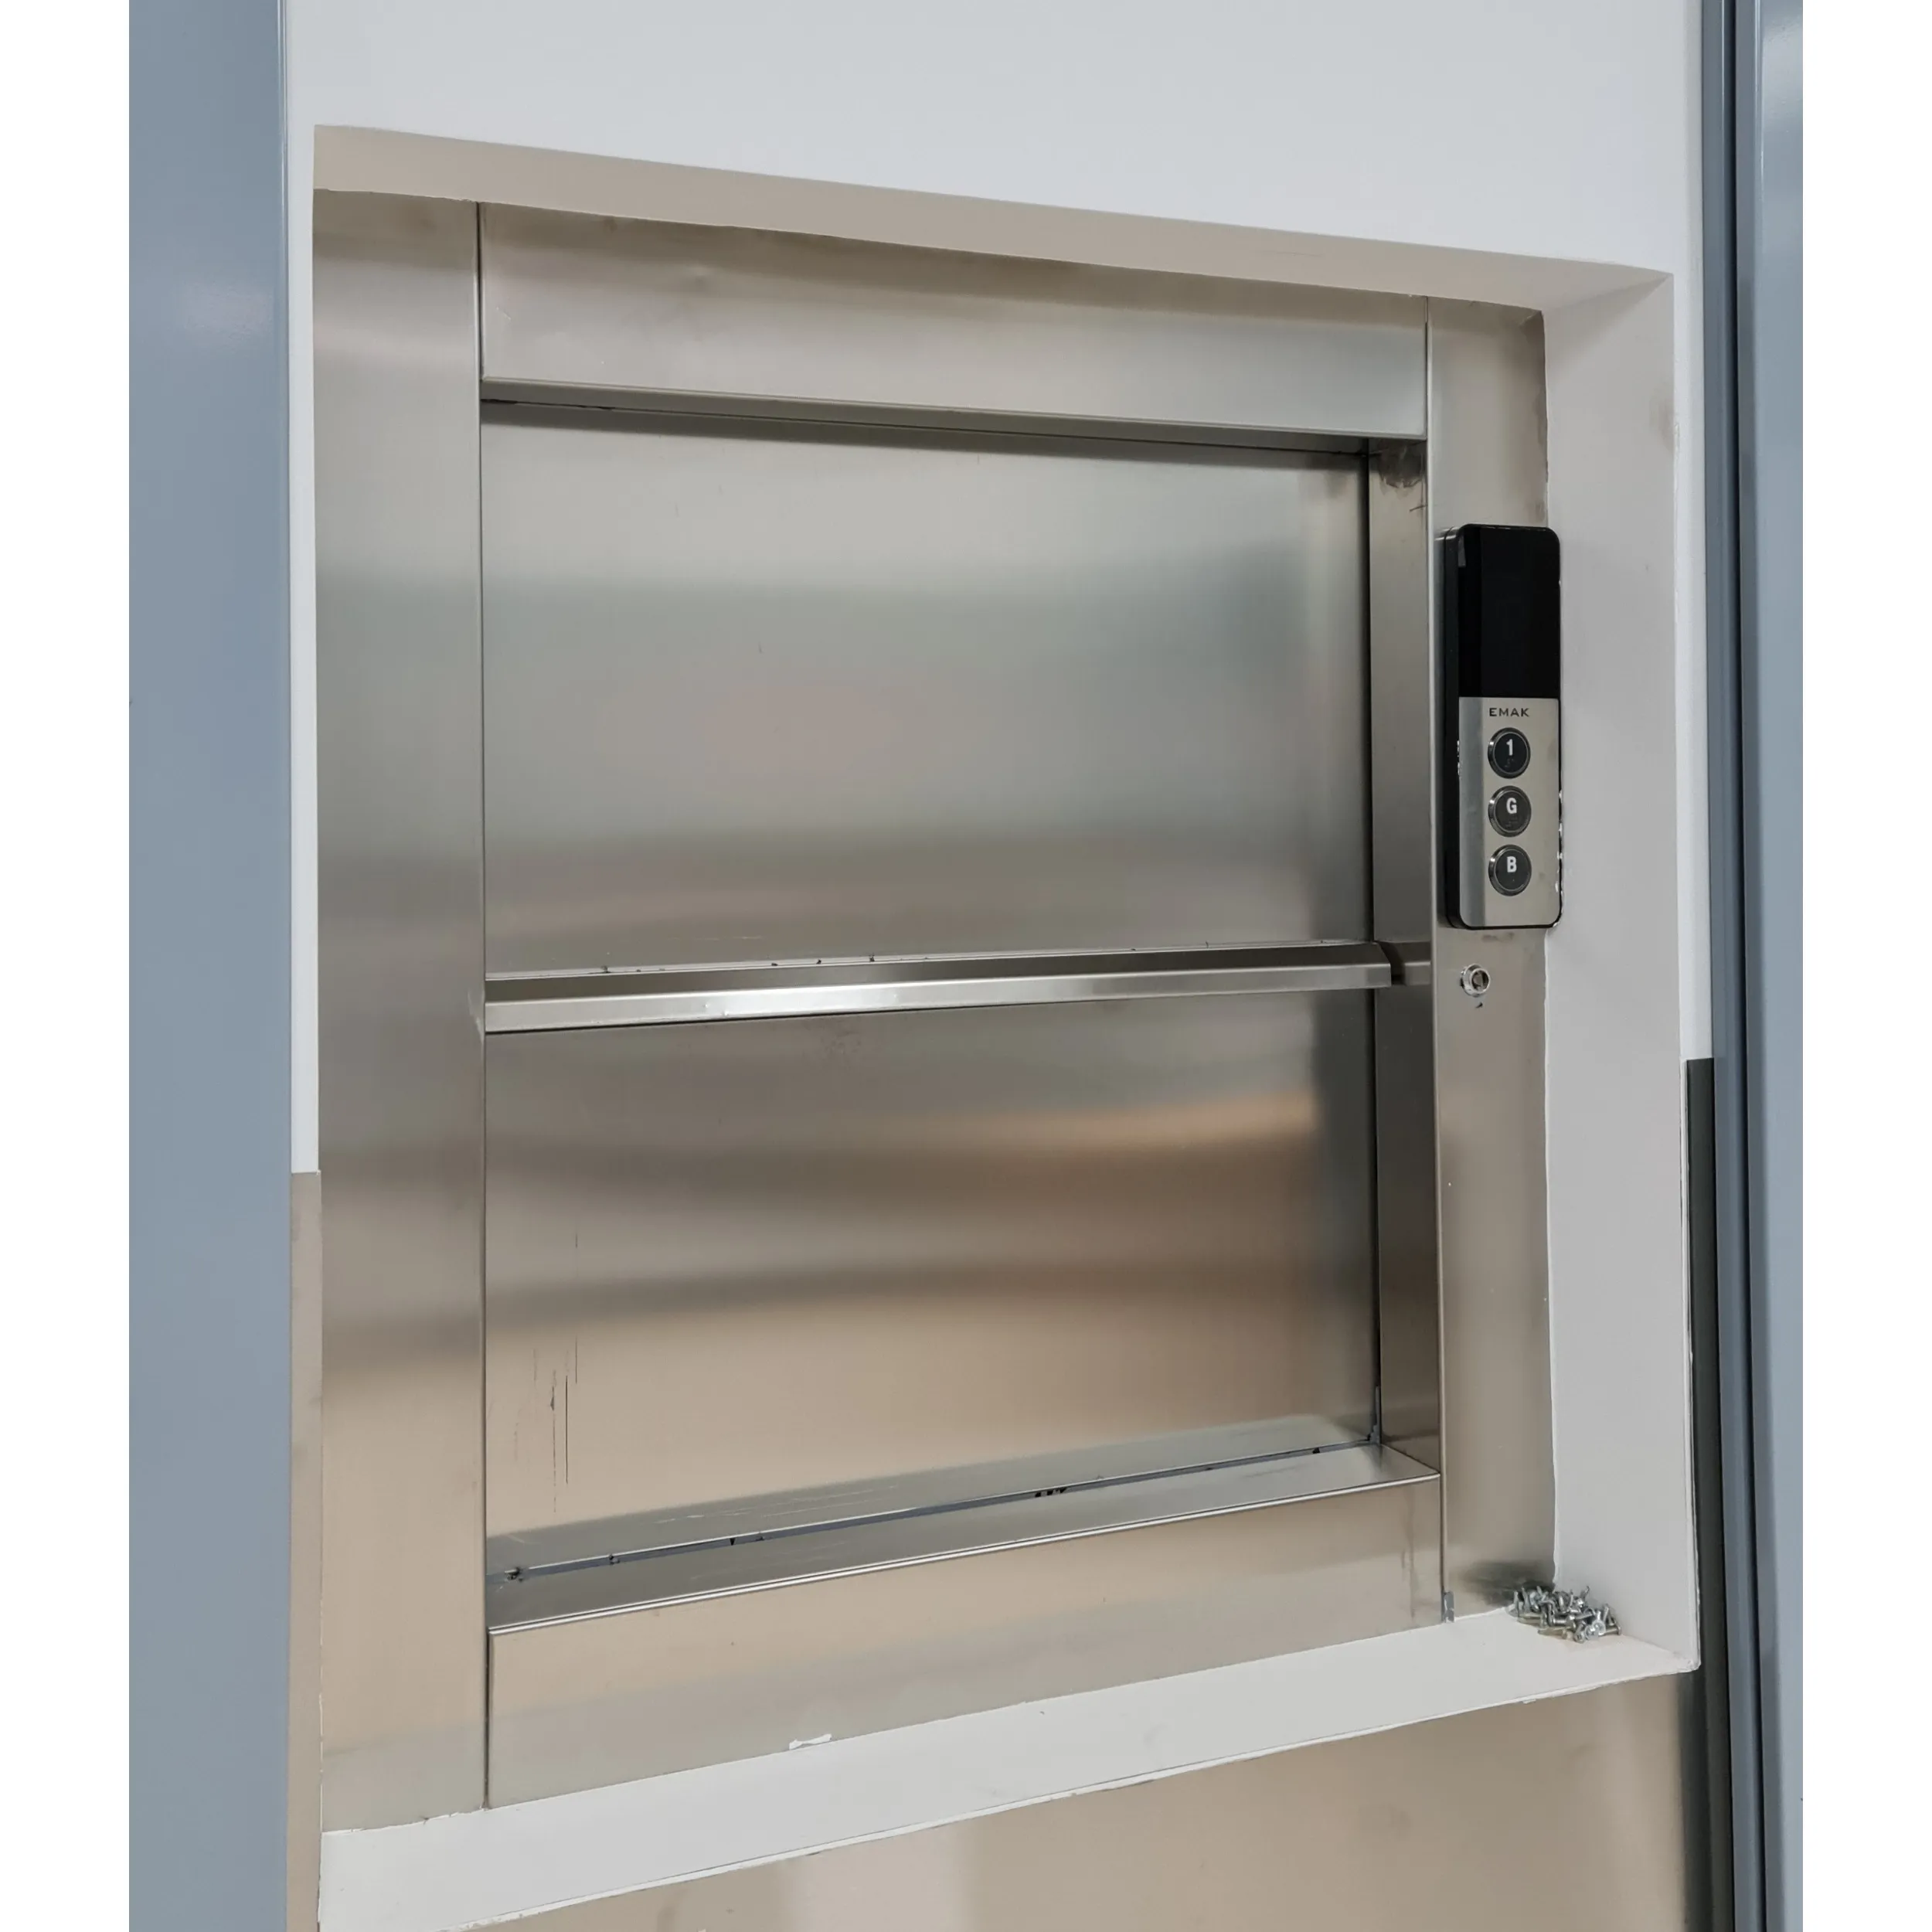 Restoran ve otel Dumbwaiter tek hız için gıda asansörler 0.2 m/s 2 durur kapasite 50kg davul makinesi servis asansörü gıda kaldırma